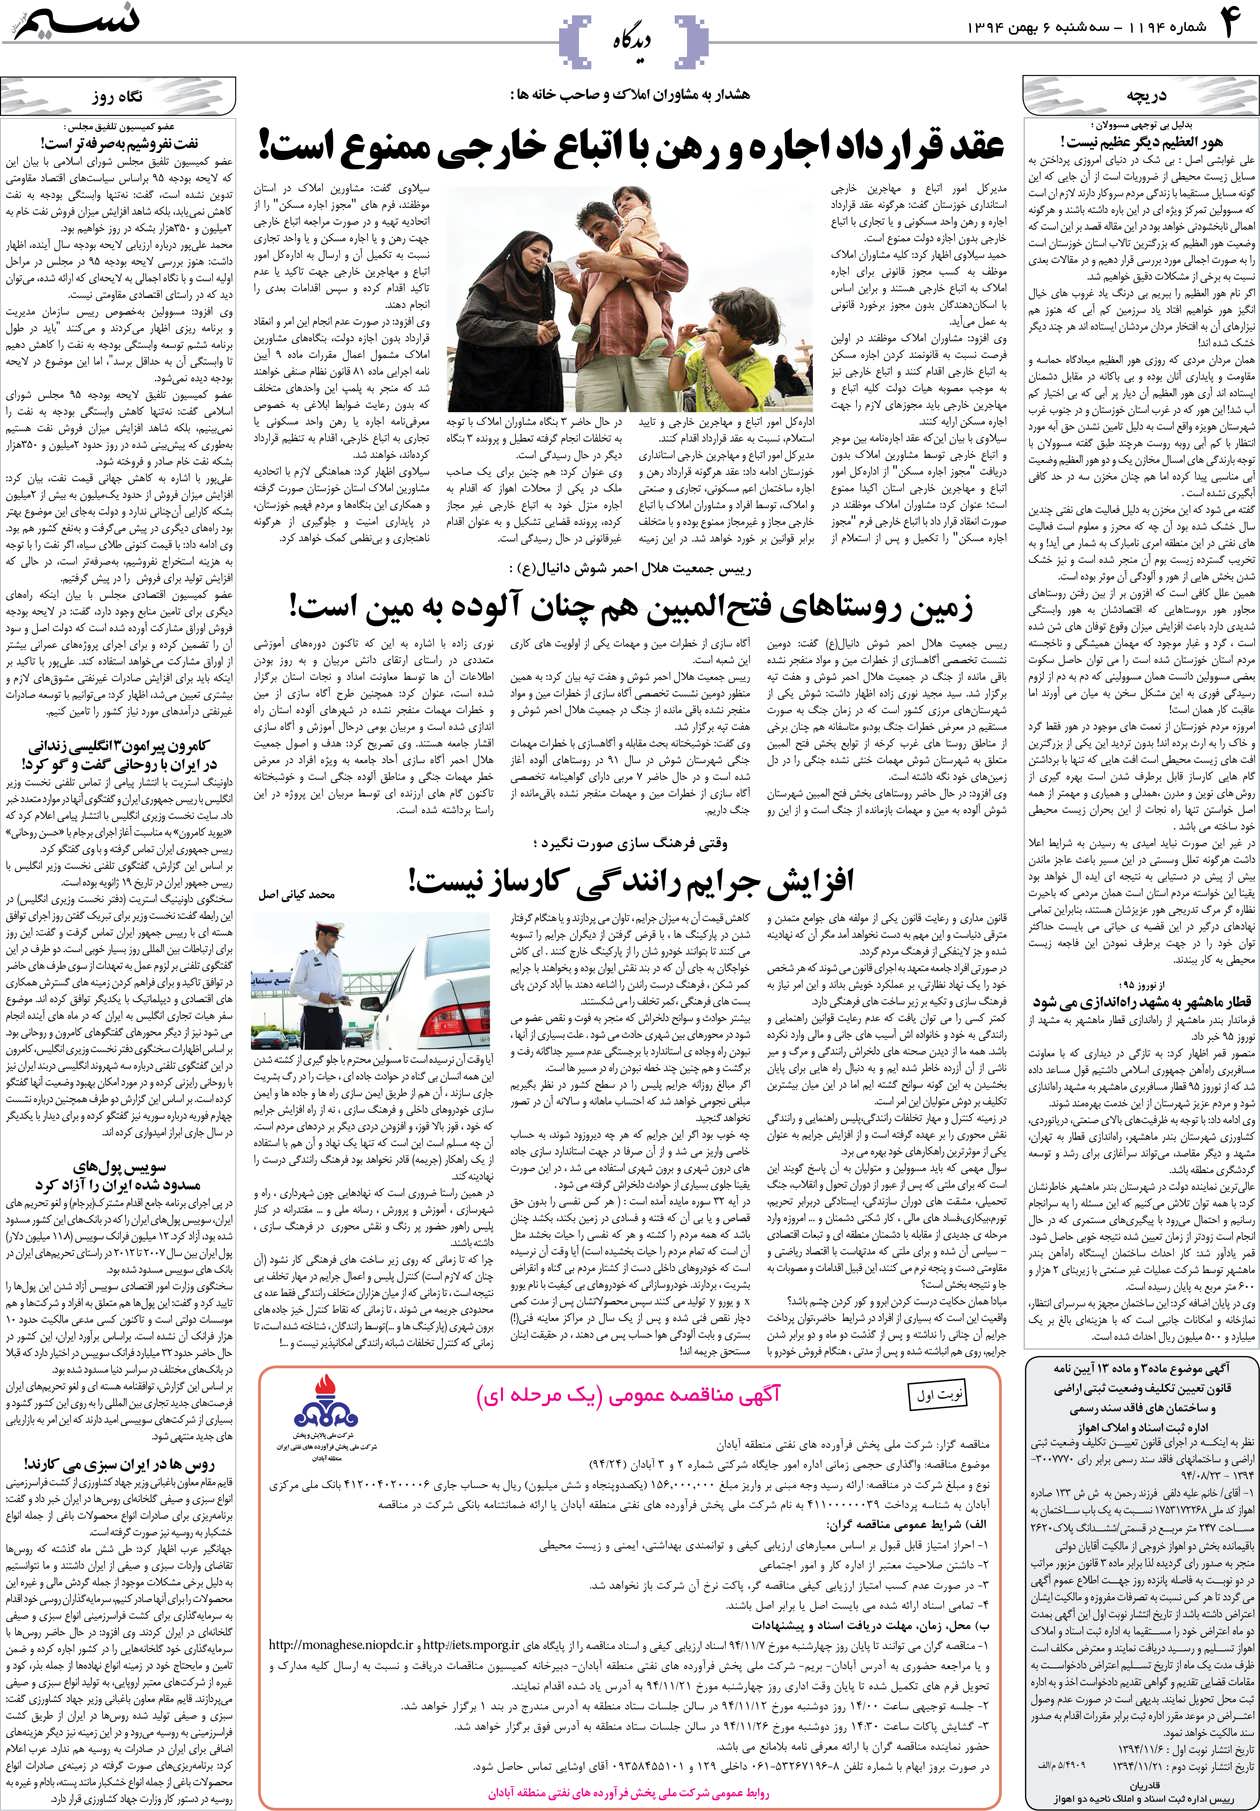 صفحه دیدگاه روزنامه نسیم شماره 1194